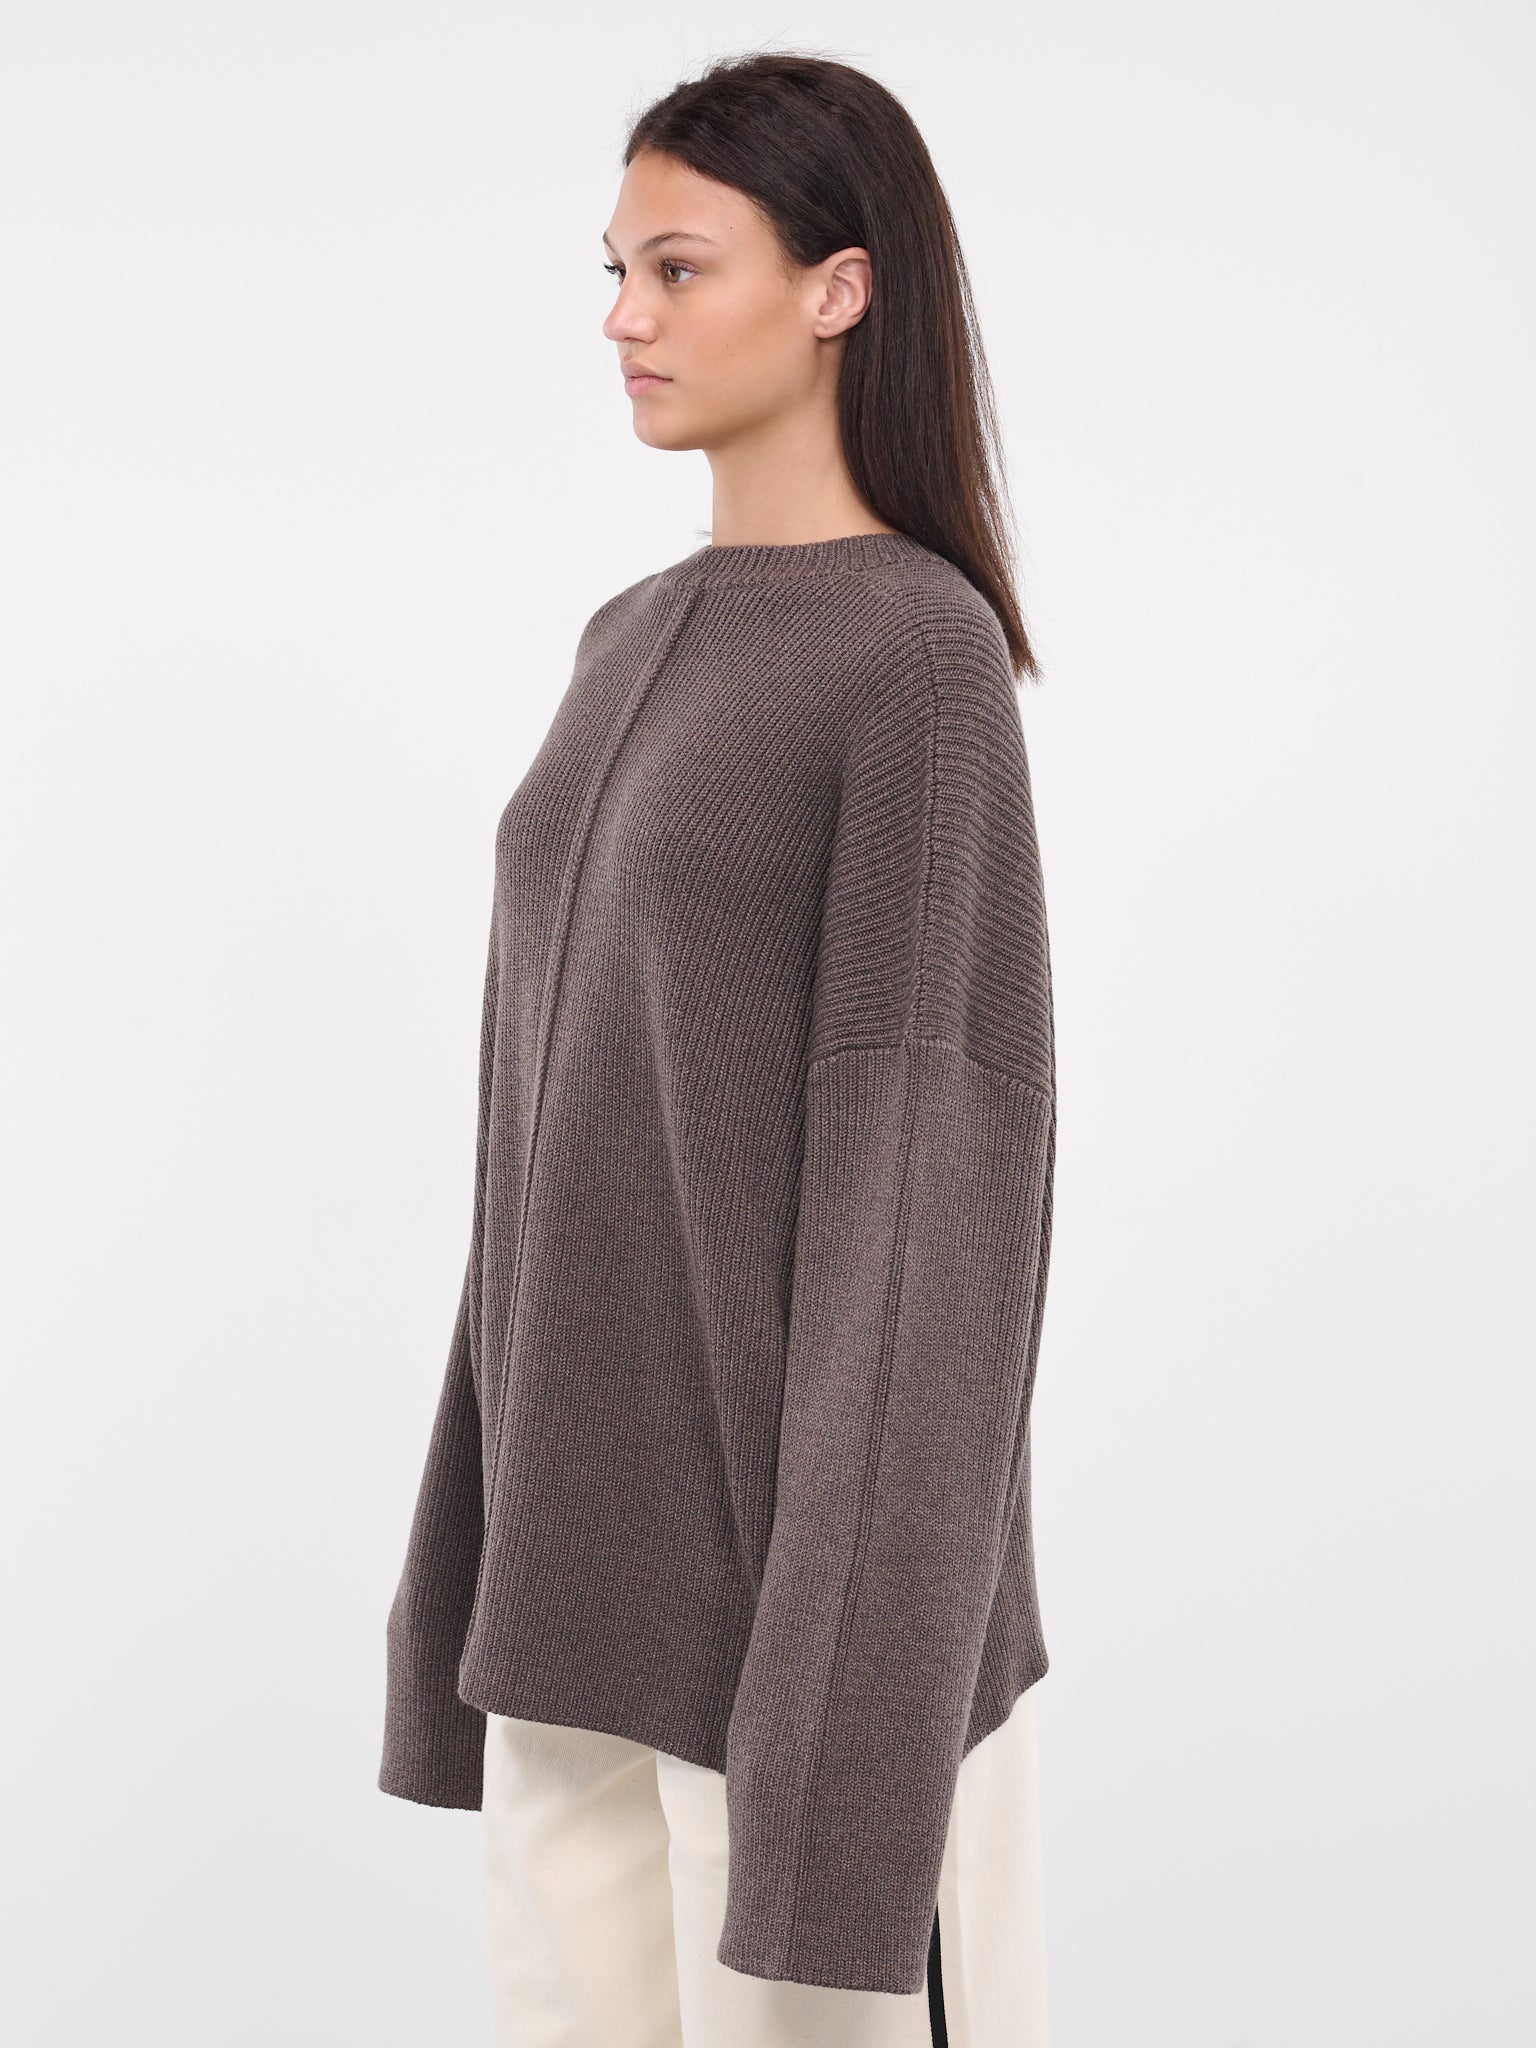 Cape Sweater (PD-U-723-DARK-ASH-MELANGE)